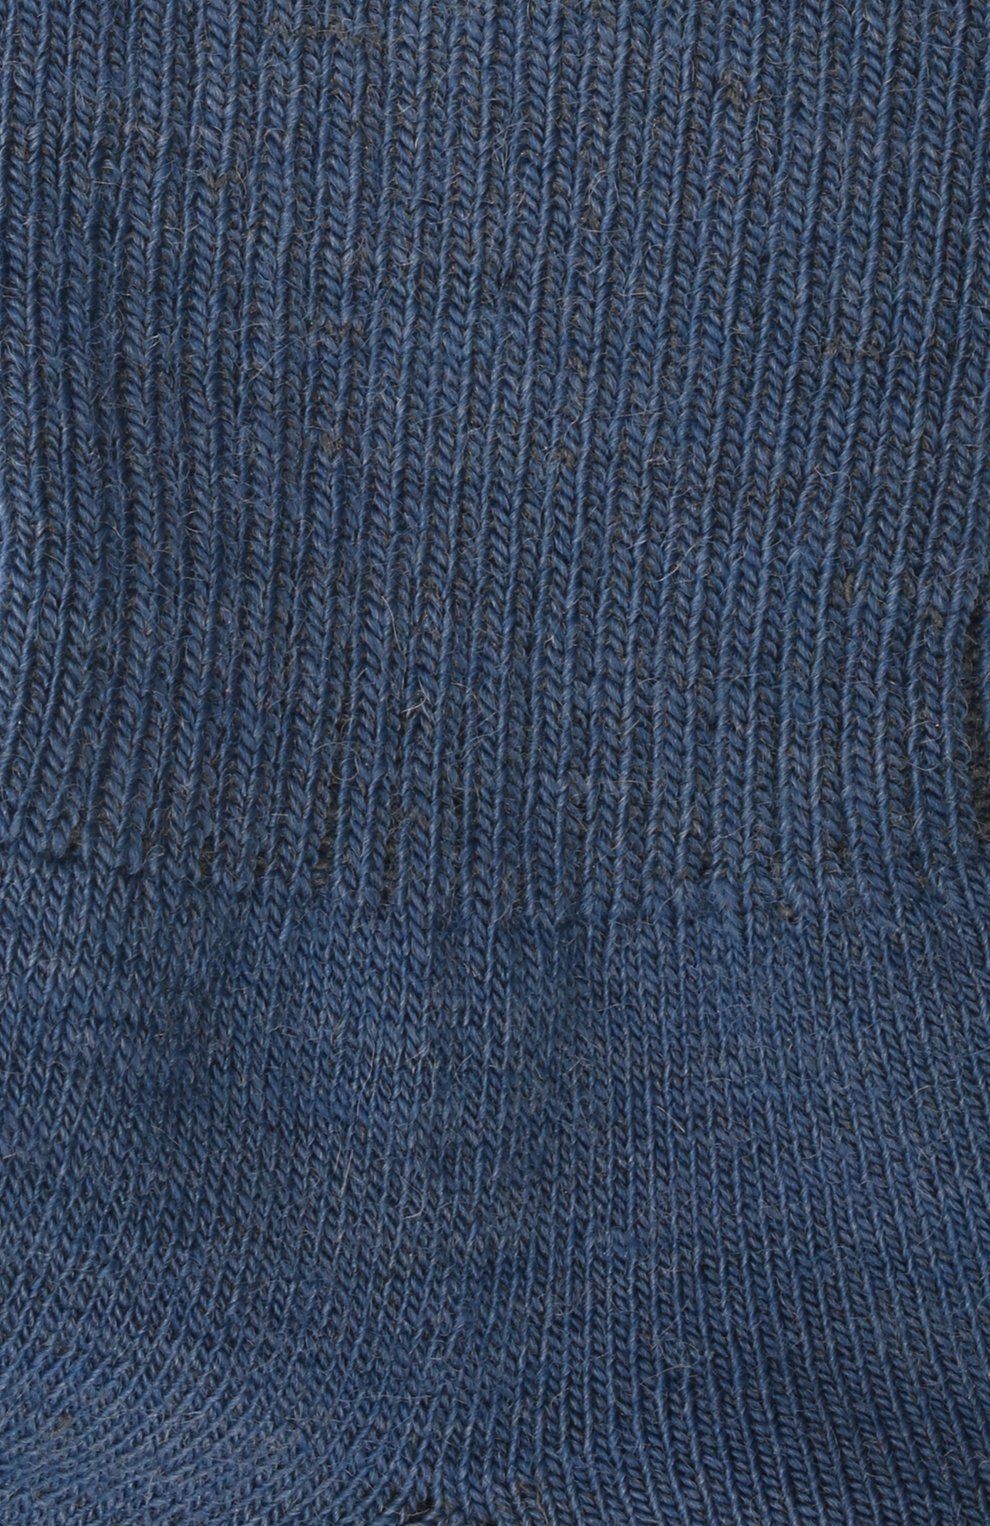 Детские шерстяные носки WOOL&COTTON синего цвета, арт. NAML | Фото 2